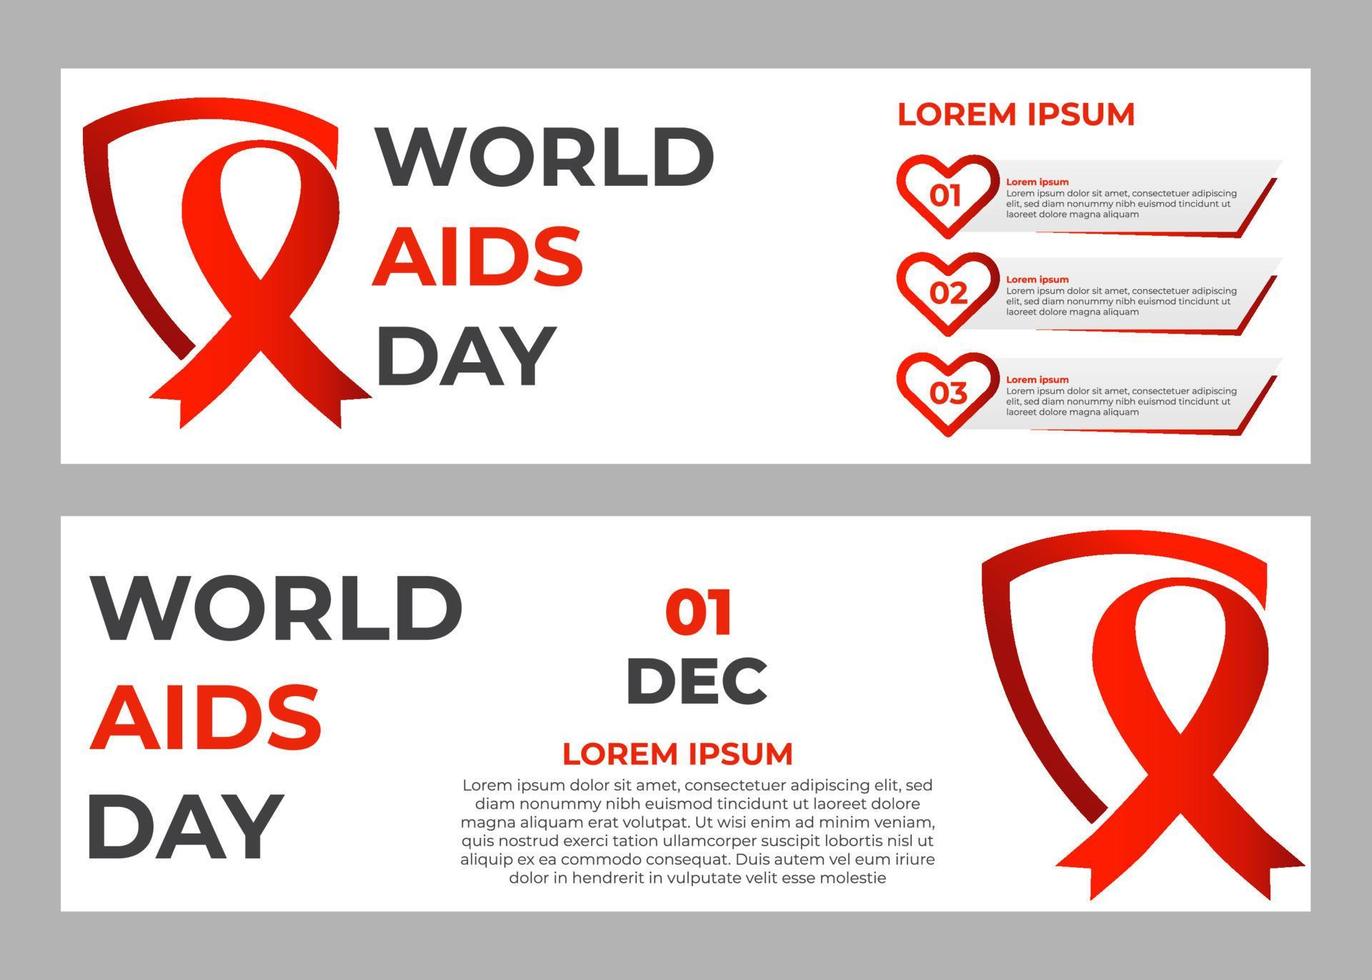 ensemble de modèles de bannières de la journée mondiale du sida vecteur